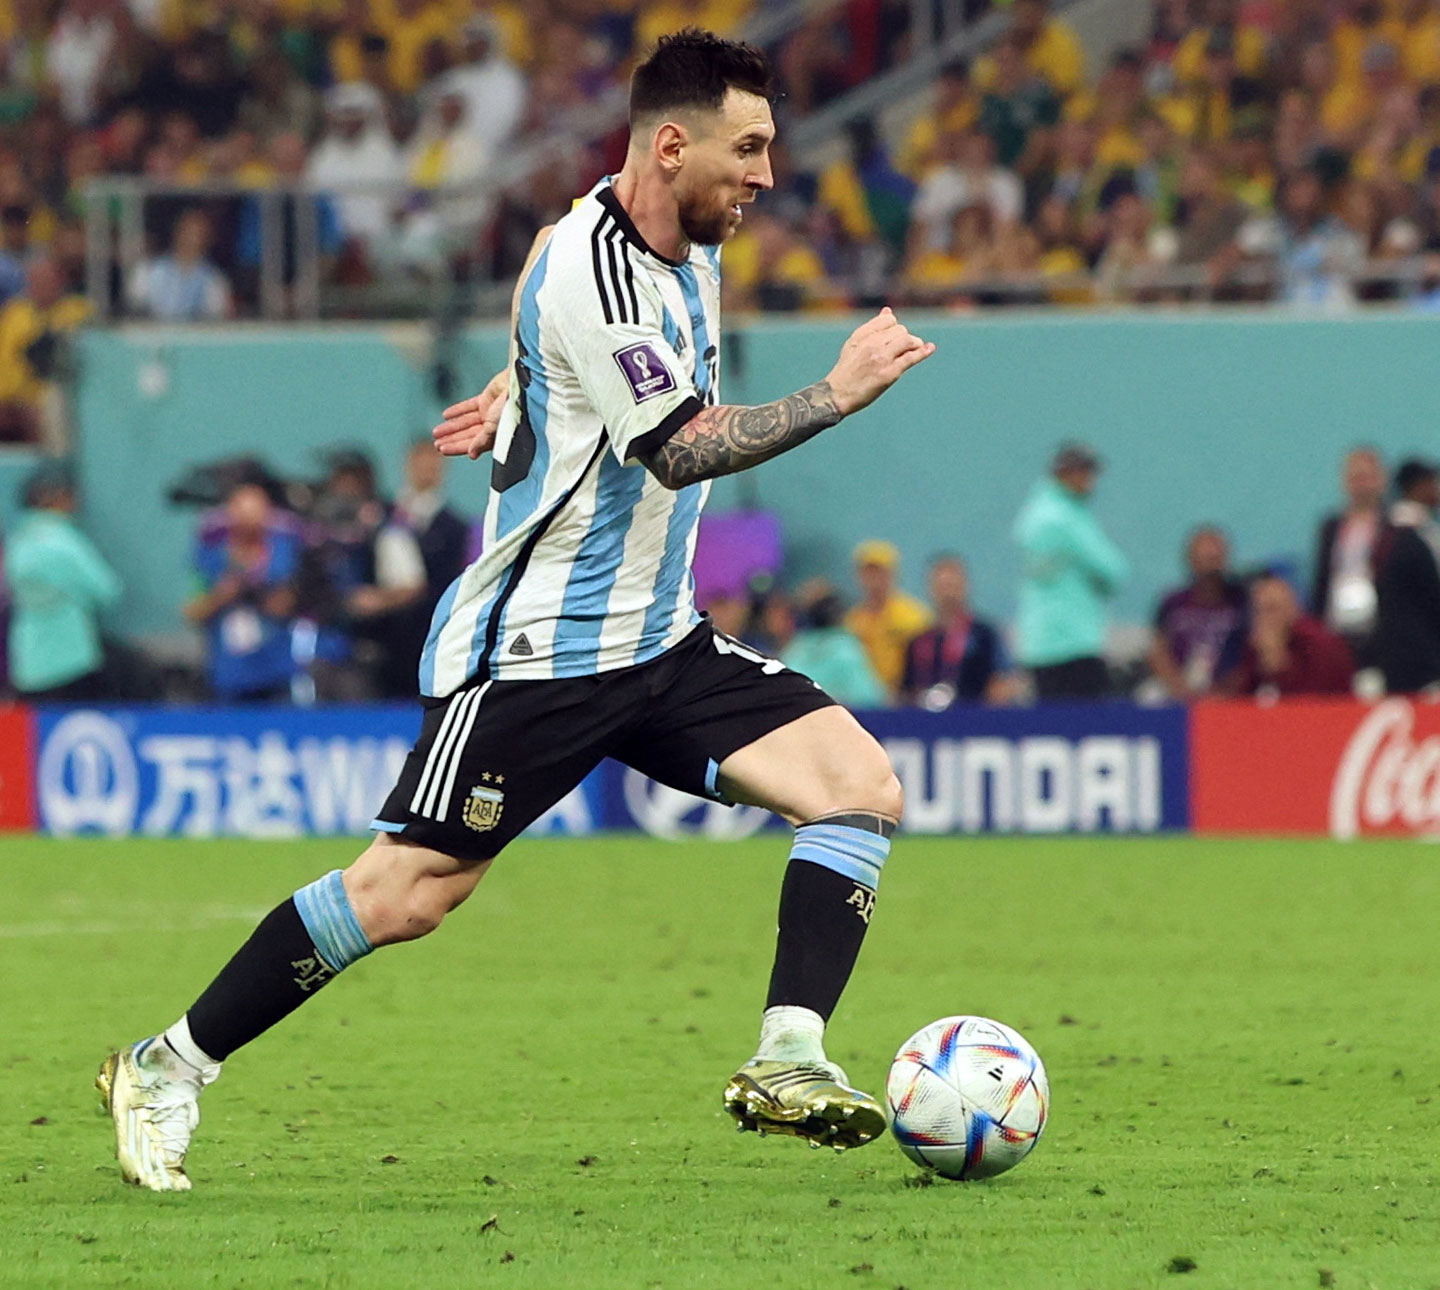 Đây là trận đấu giữa Hà Lan và Argentina, và sự xuất hiện của Messi sẽ khiến trận đấu trở nên đặc biệt hơn bao giờ hết. Trực tiếp trên VTV3, bạn sẽ được chứng kiến cảm xúc của các cầu thủ và khán giả trên khán đài. Hãy xem trận đấu này và cảm nhận sự hồi hộp của bóng đá.